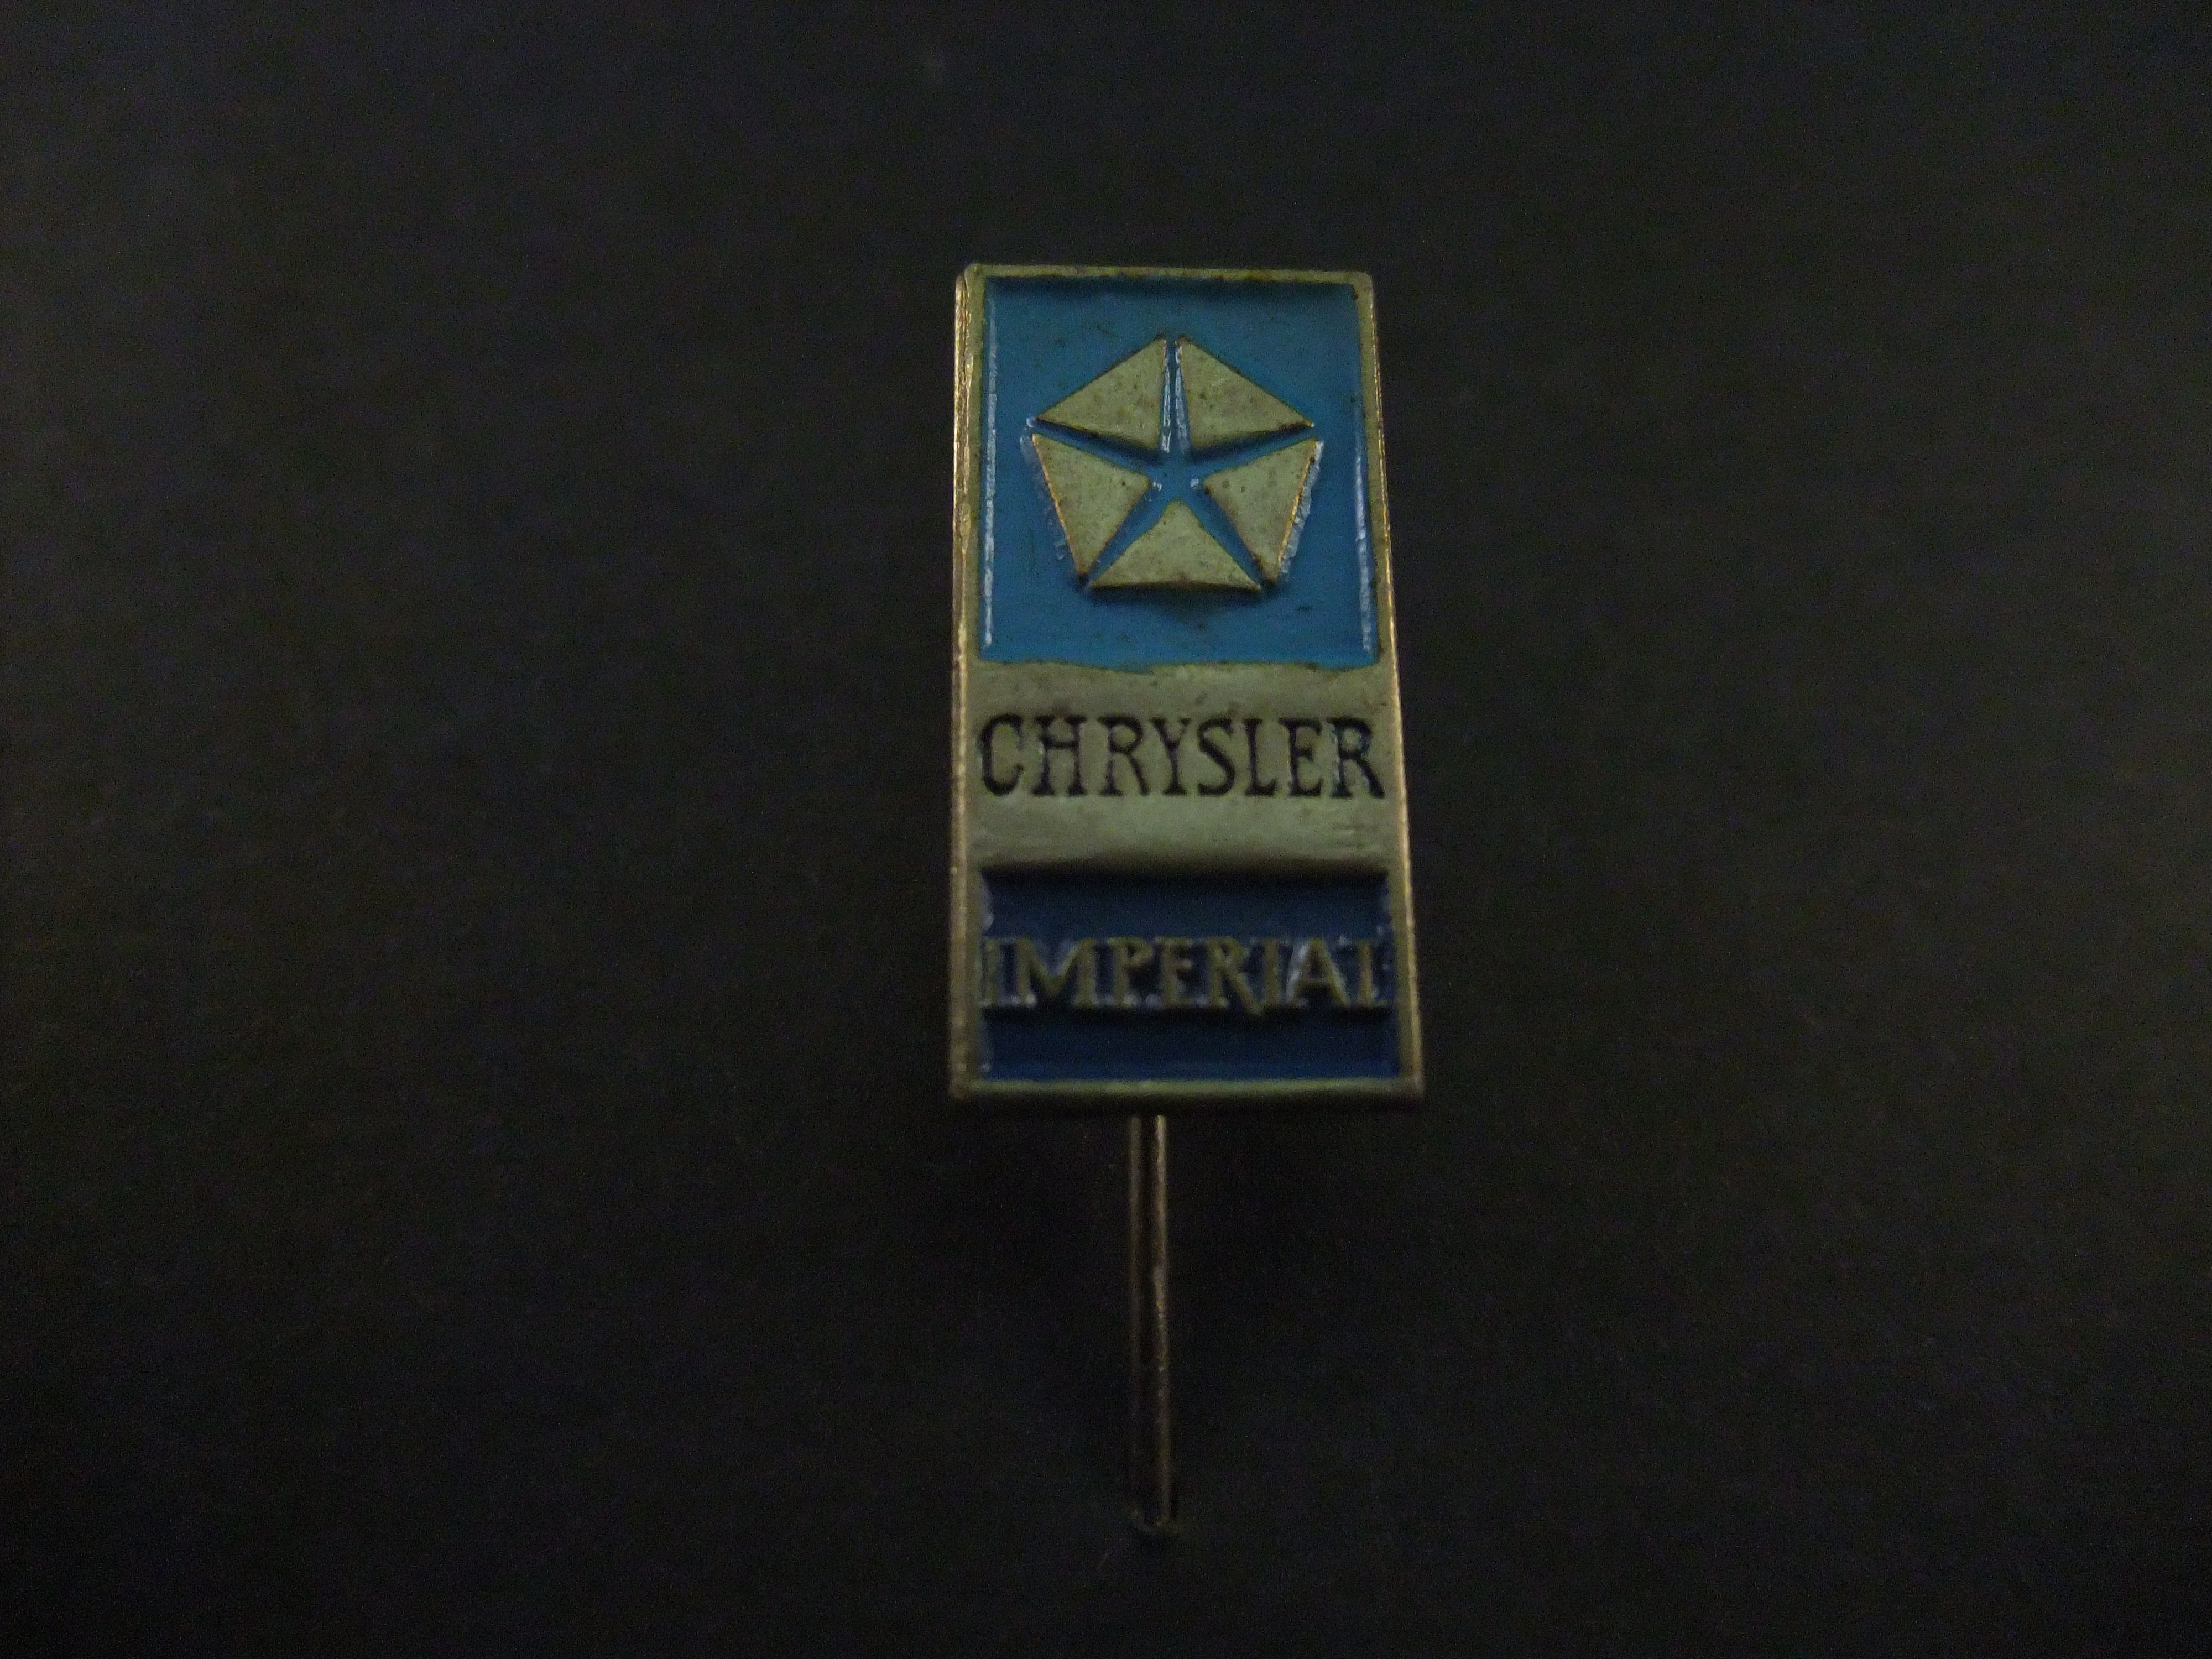 Chrysler Imperial topmodel van Chrysler , logo